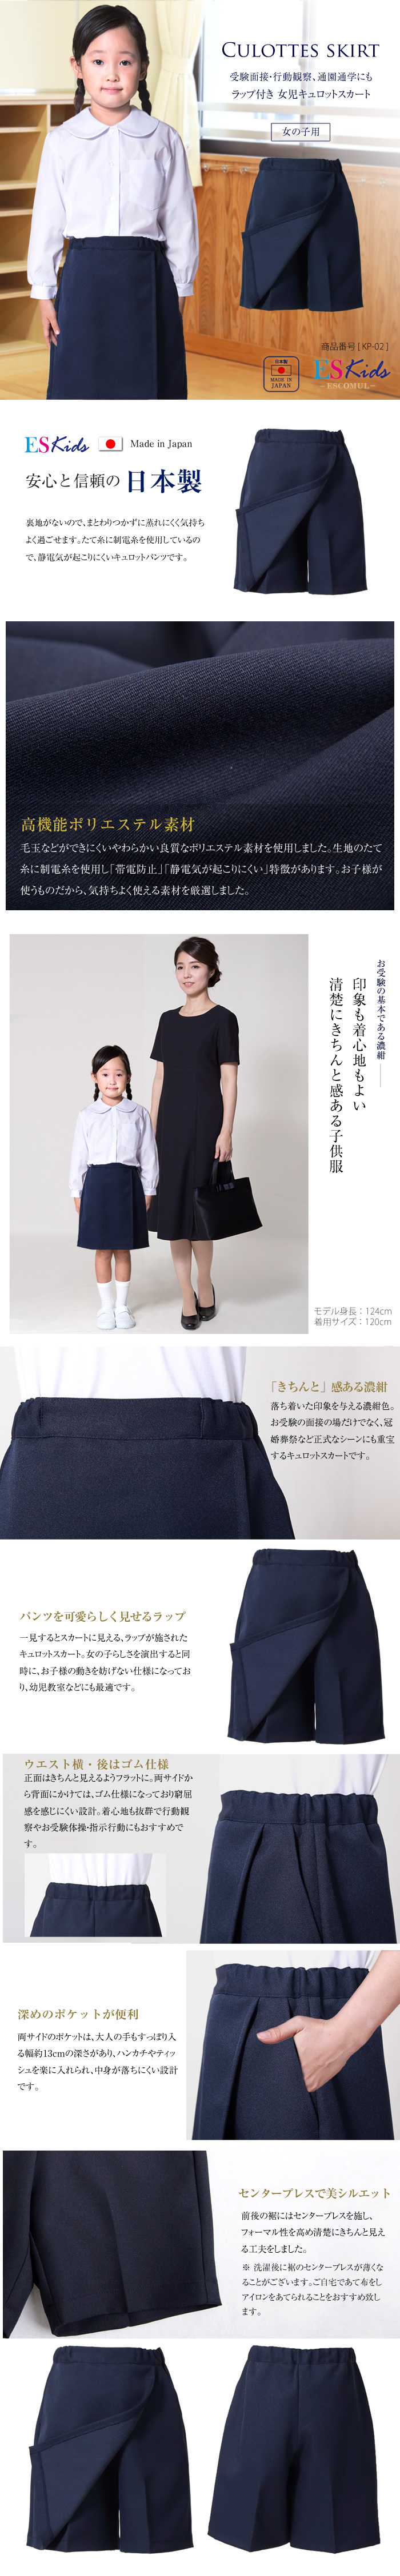 女の子用】お子様用 日本製 キュロットスカート【KP-02】[110cm 120cm